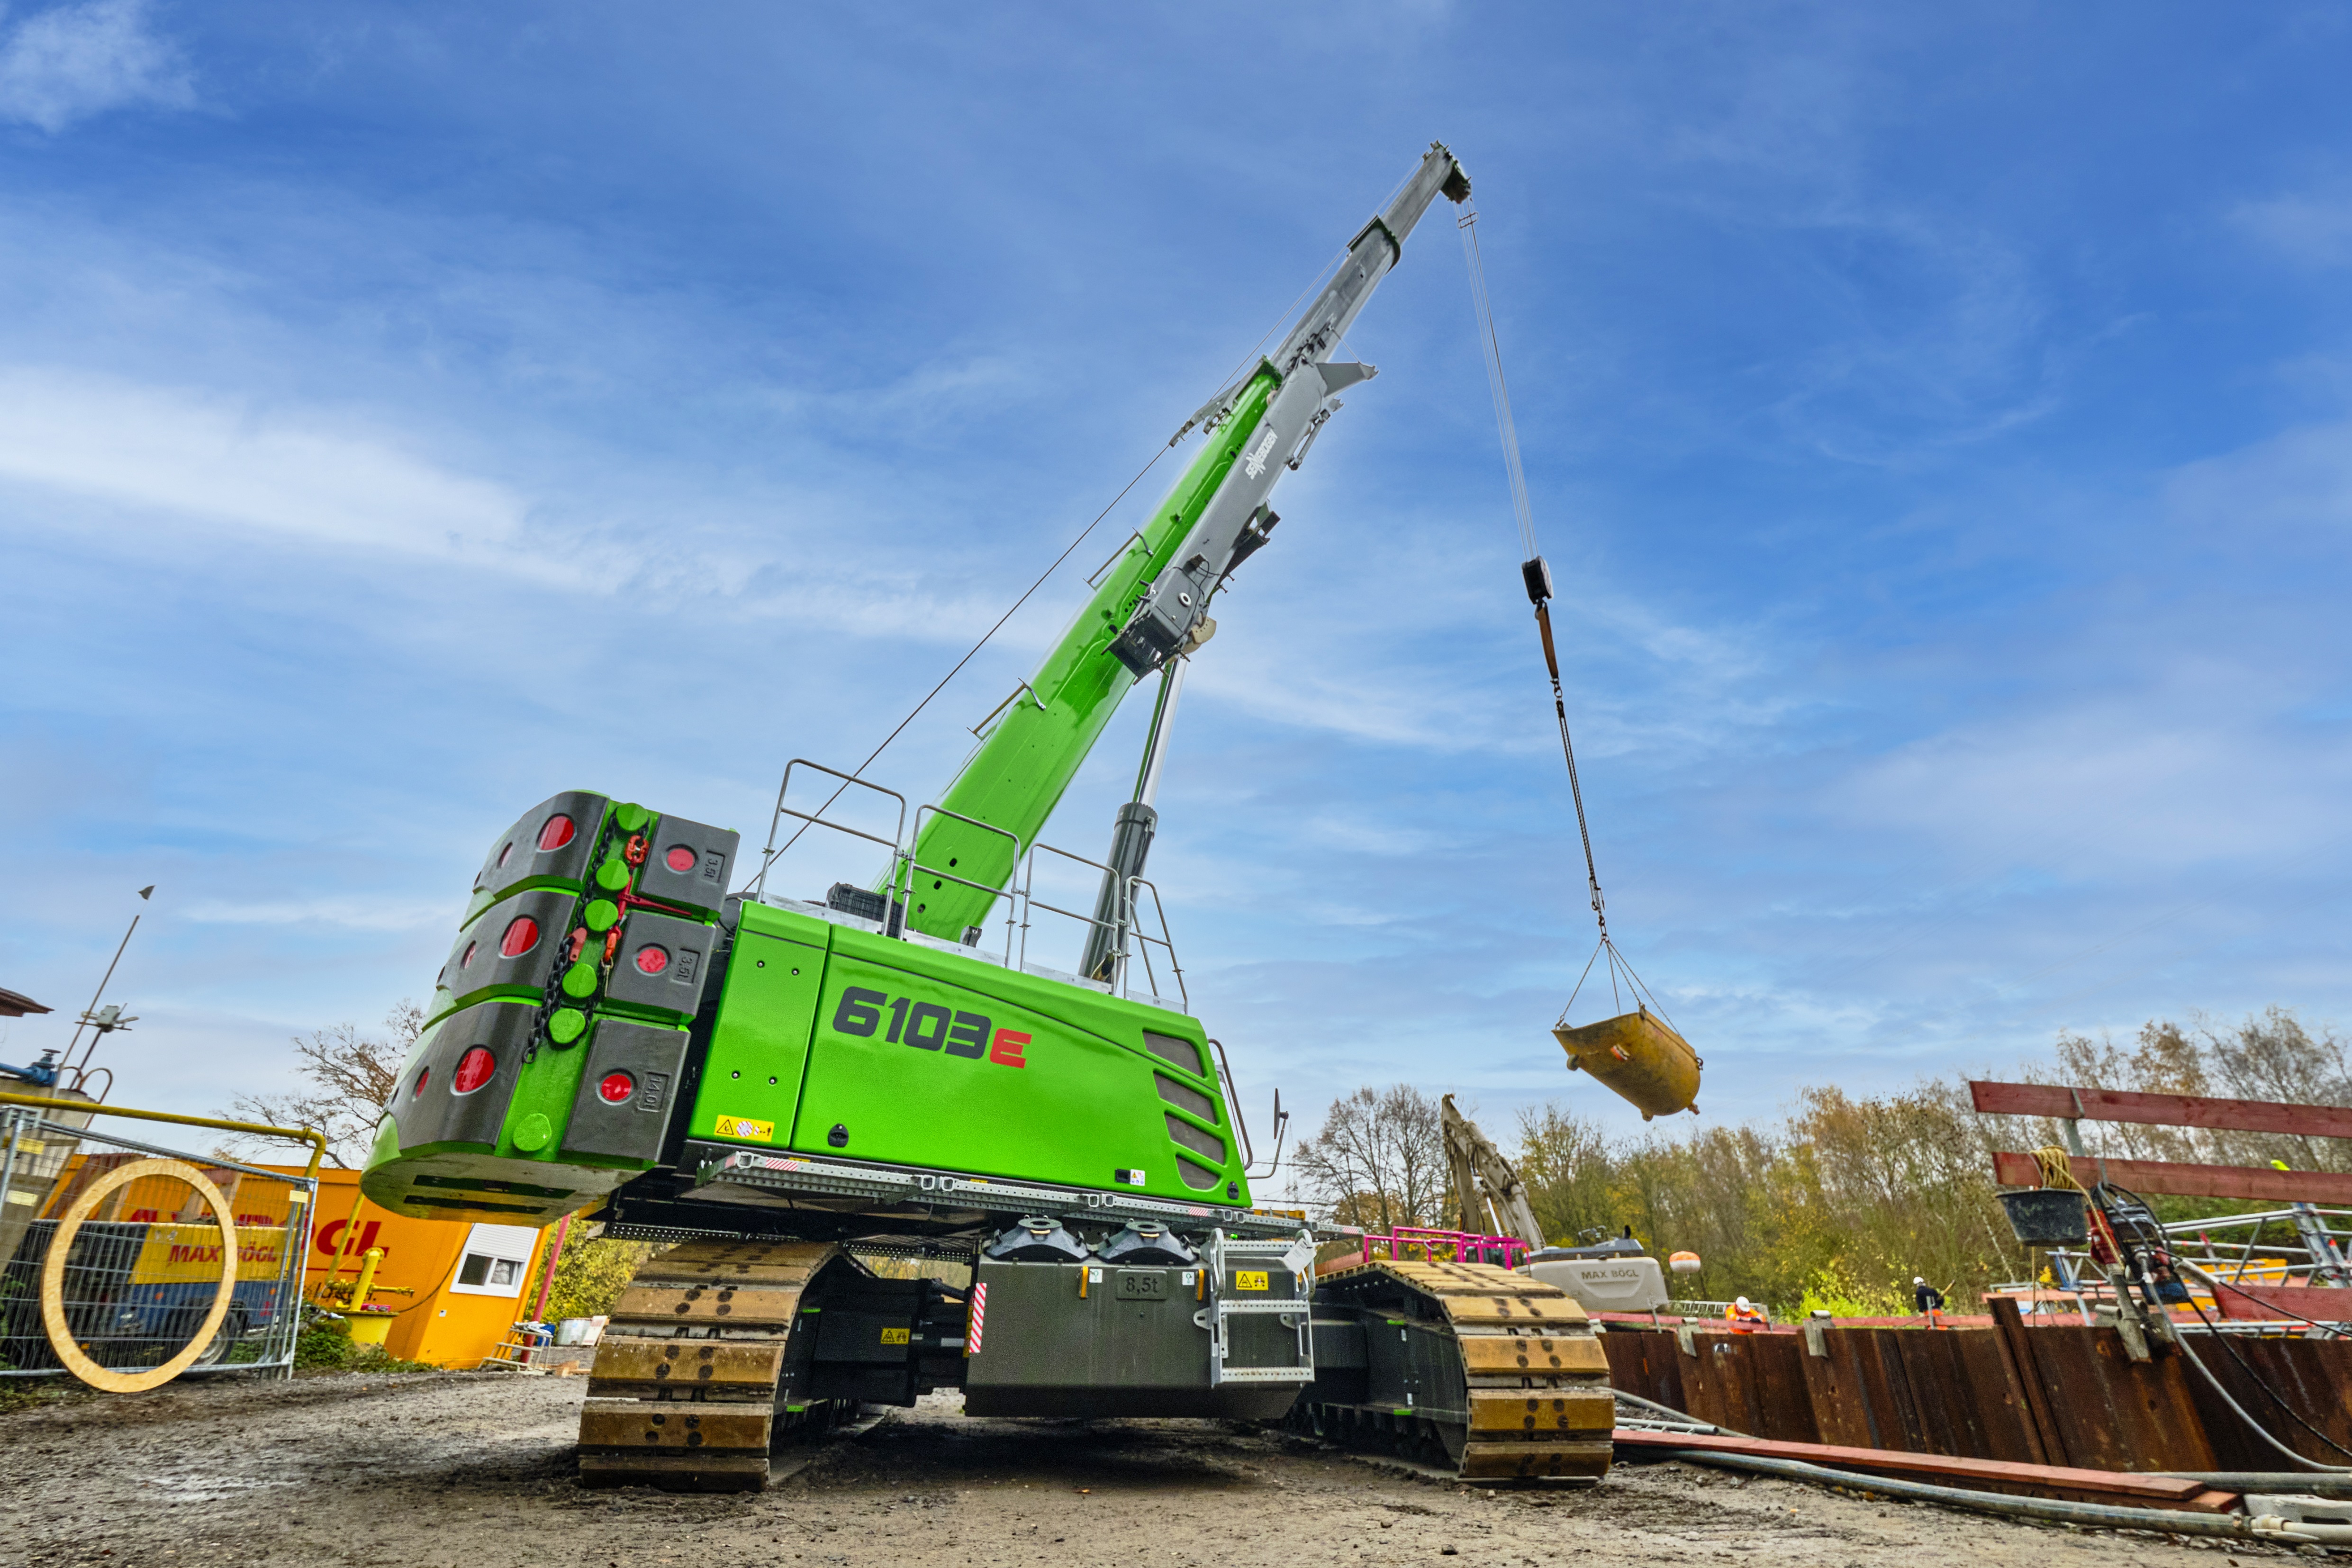 UK Providers of Sennebogen Mobile Crane Rental